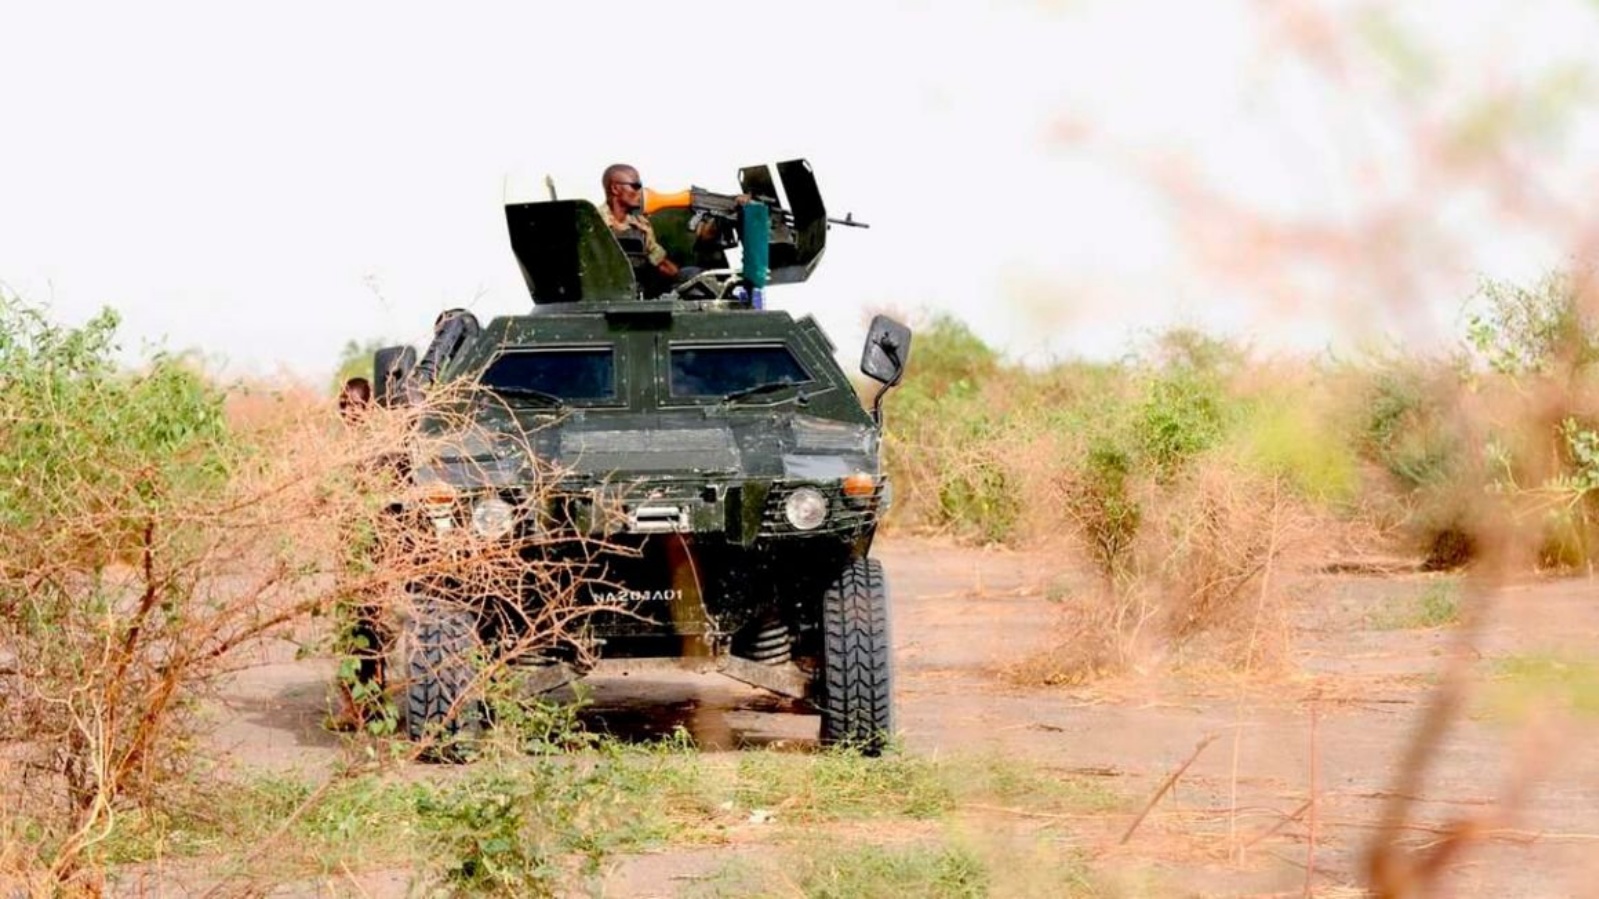 جنود نيجيريون يقومون بدورية في شمال ولاية بورنو بالقرب من معسكر سابق لجماعة بوكو حرام الإسلامية المتطرفة بالقرب من مايدوجوري